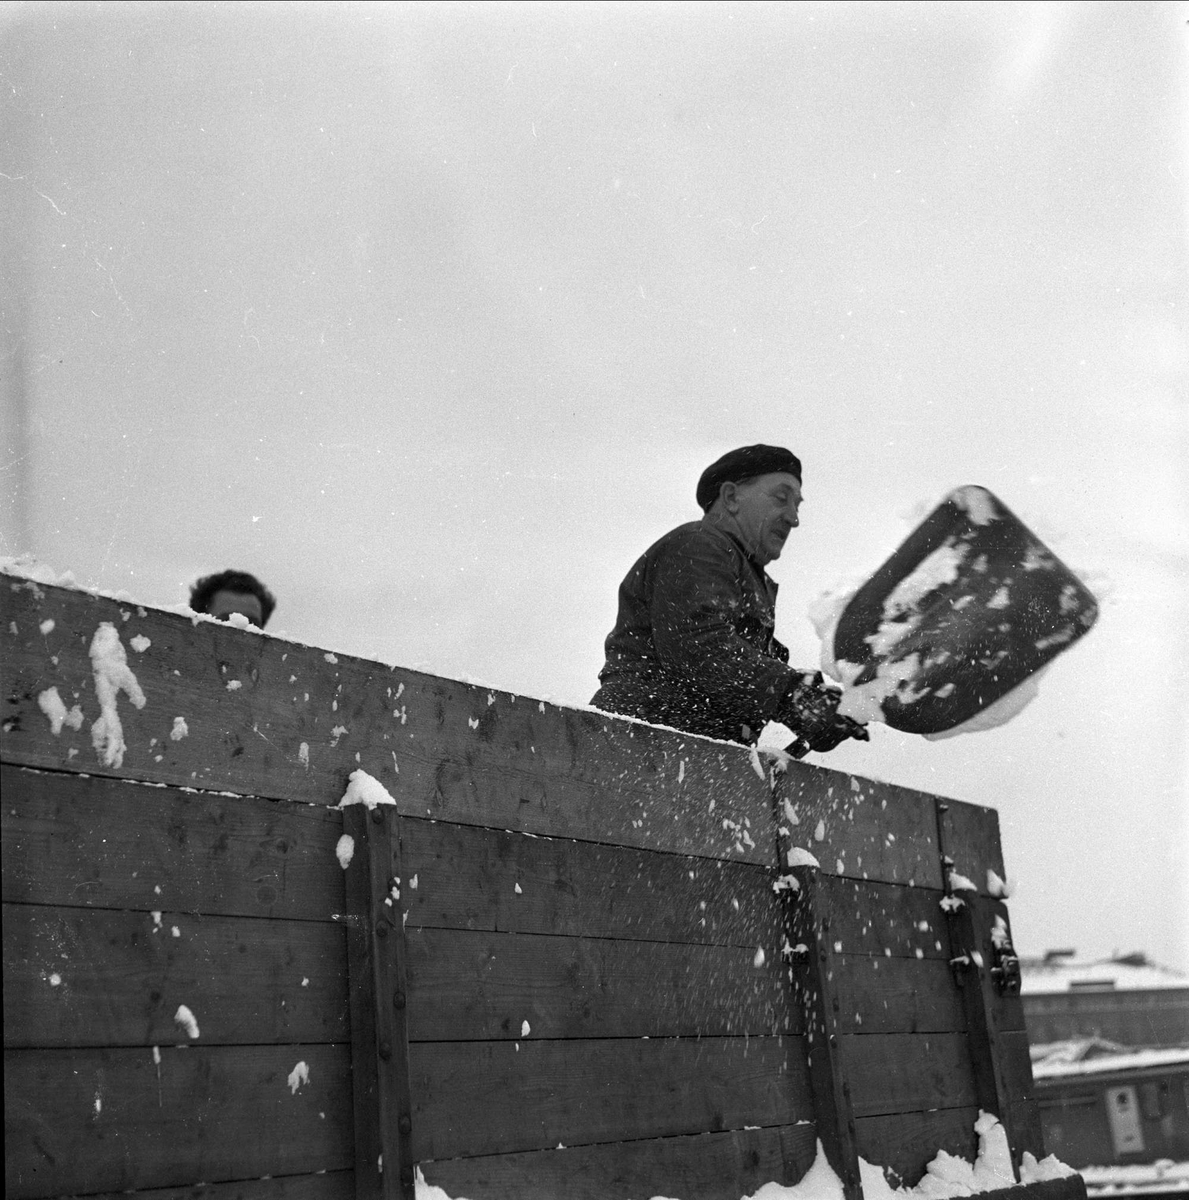 Mann med spade med snø på lastebil, Oslo, 28.11.1956.